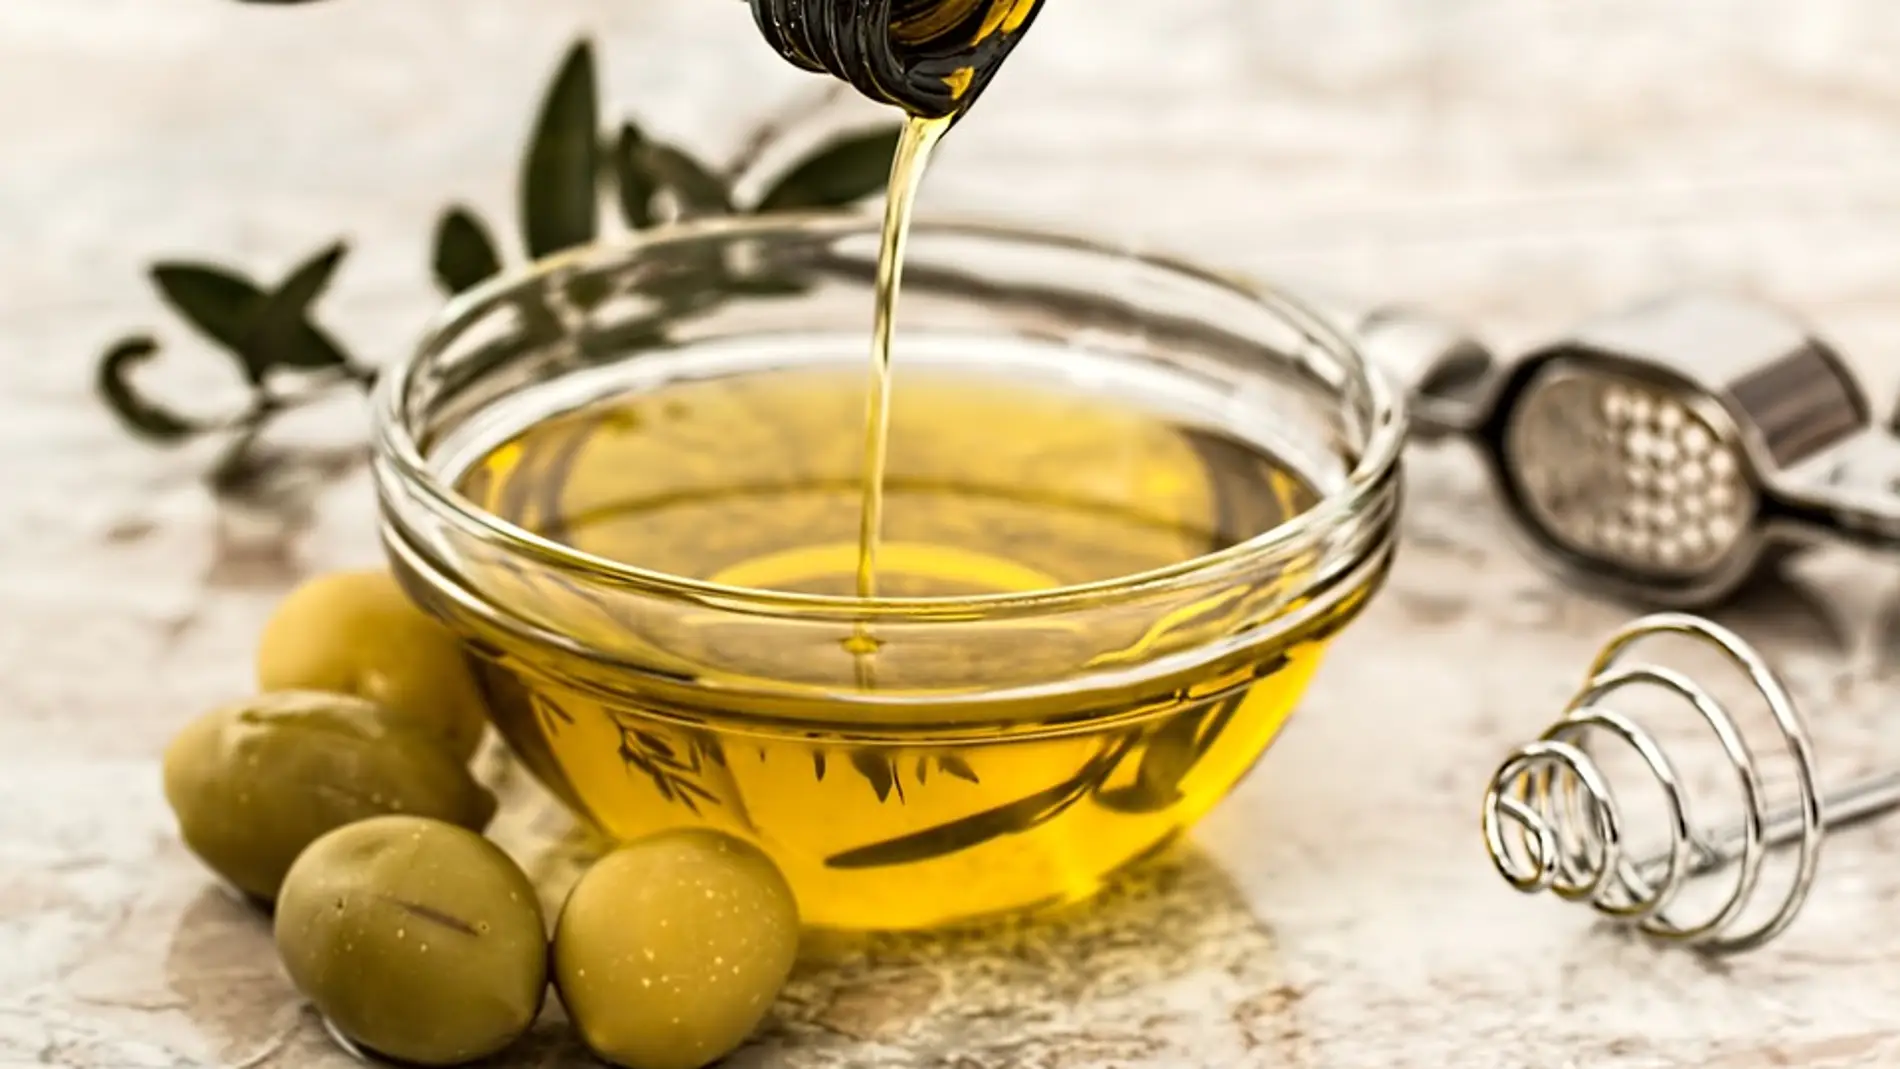 Estos son los fallos que cometes con el aceite de oliva virgen extra.